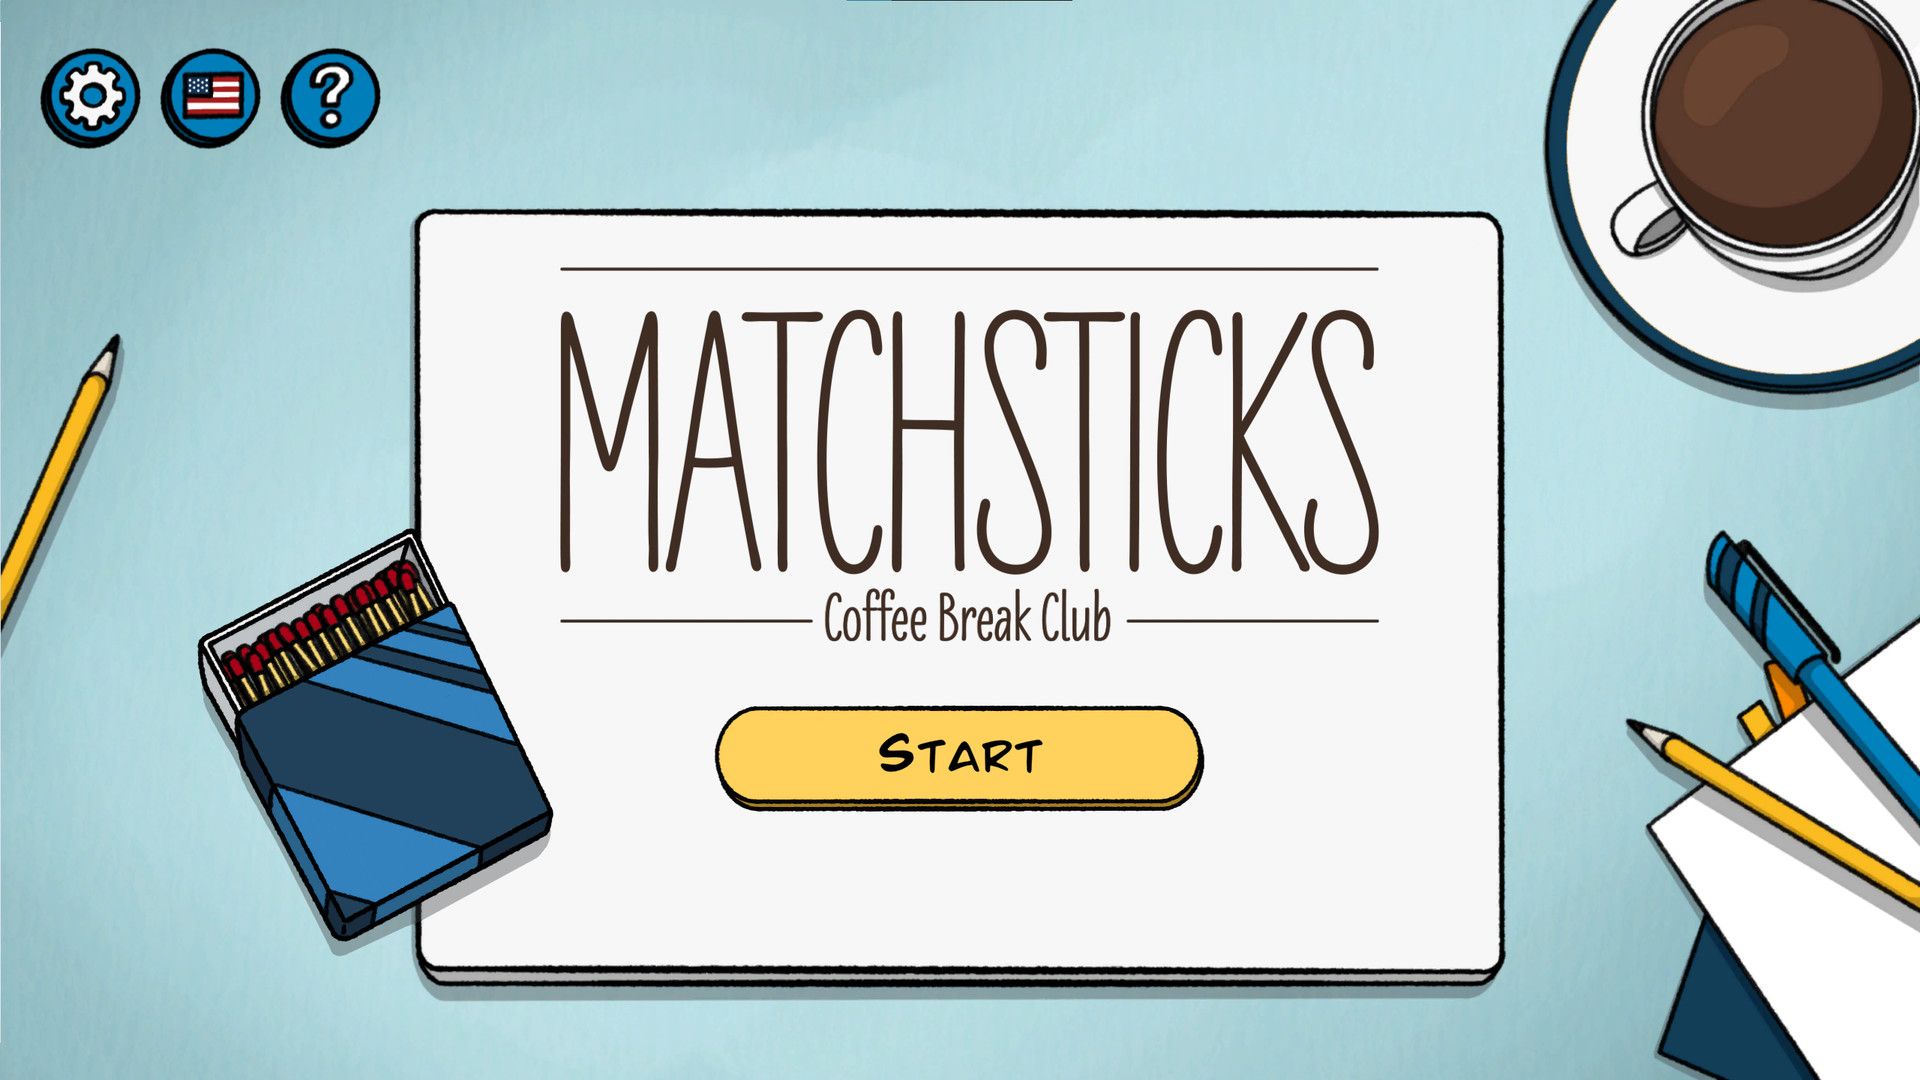 Matchsticks – Coffee Break Club Guía completa de soluciones